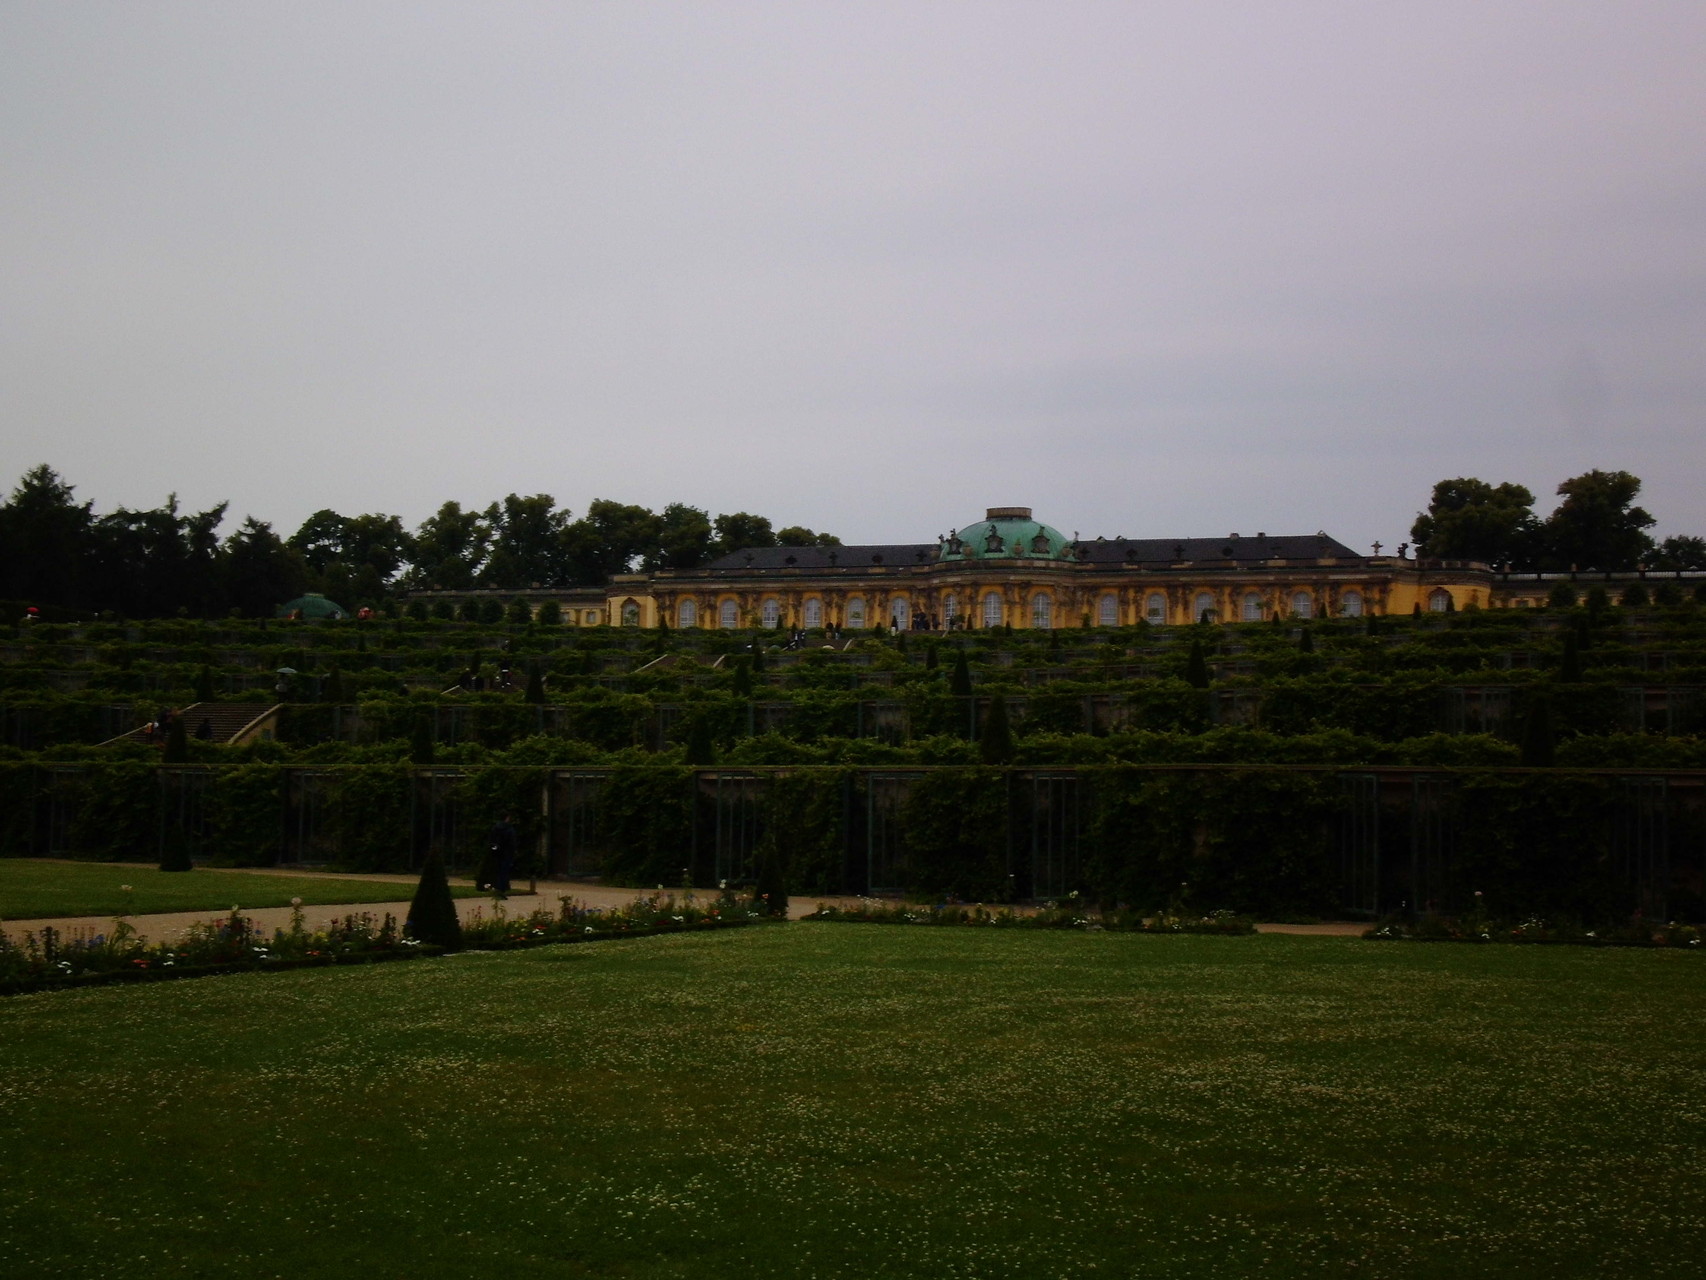 Ein mächtiges Bauwerk deutscher Geschichte: Schloss Sanssouci